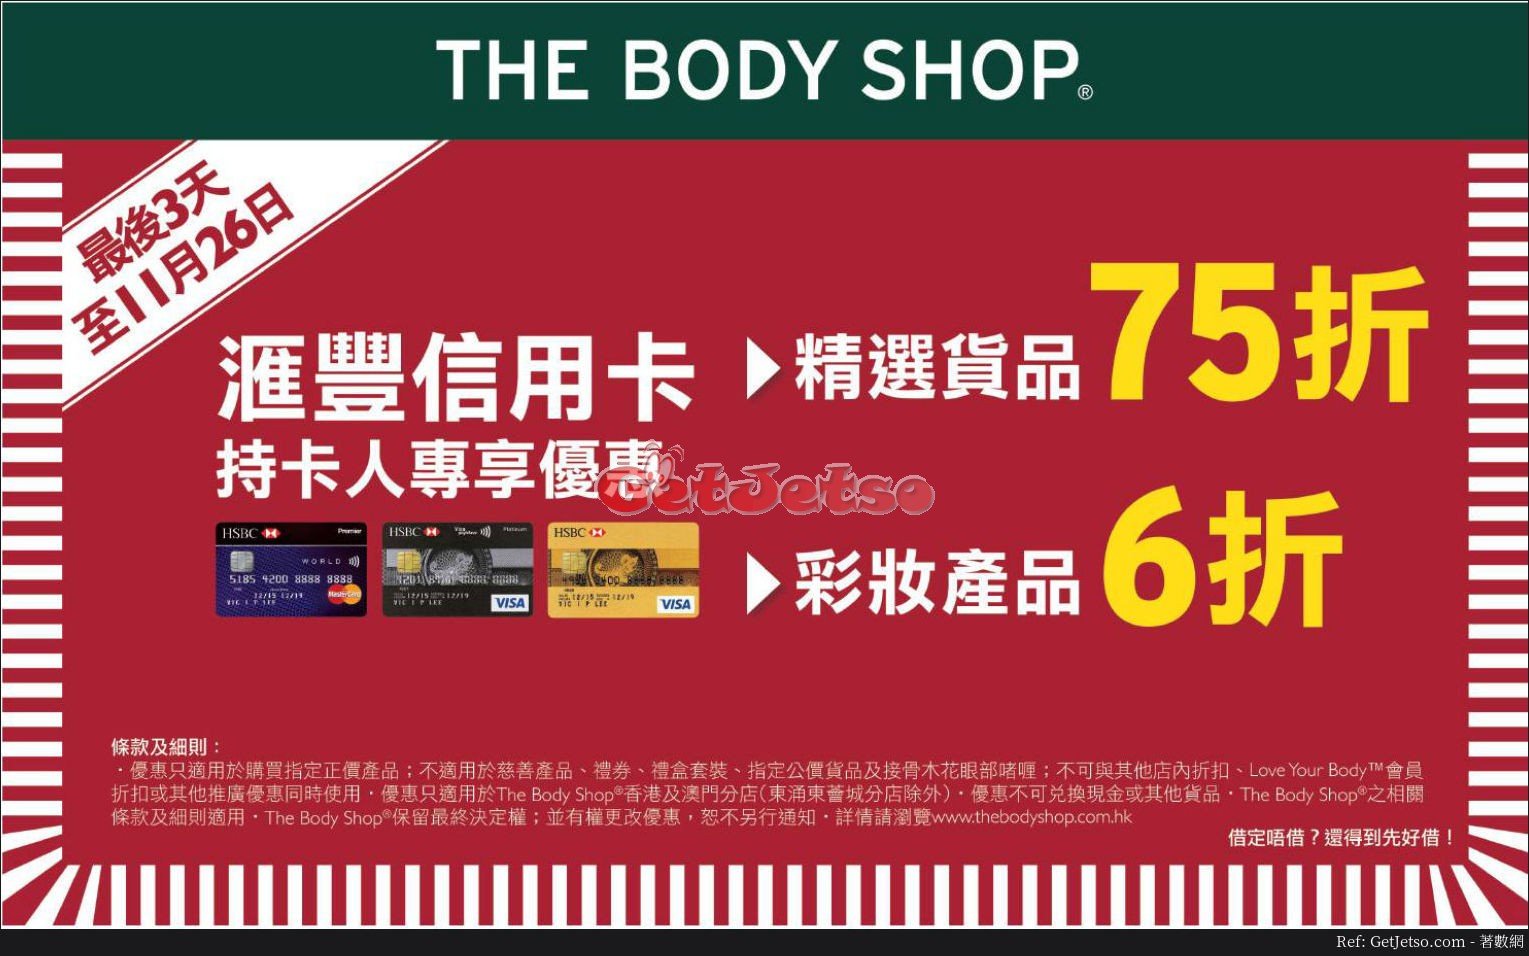 滙豐信用卡享The Body Shop低至6折優惠(至17年11月26日)圖片1